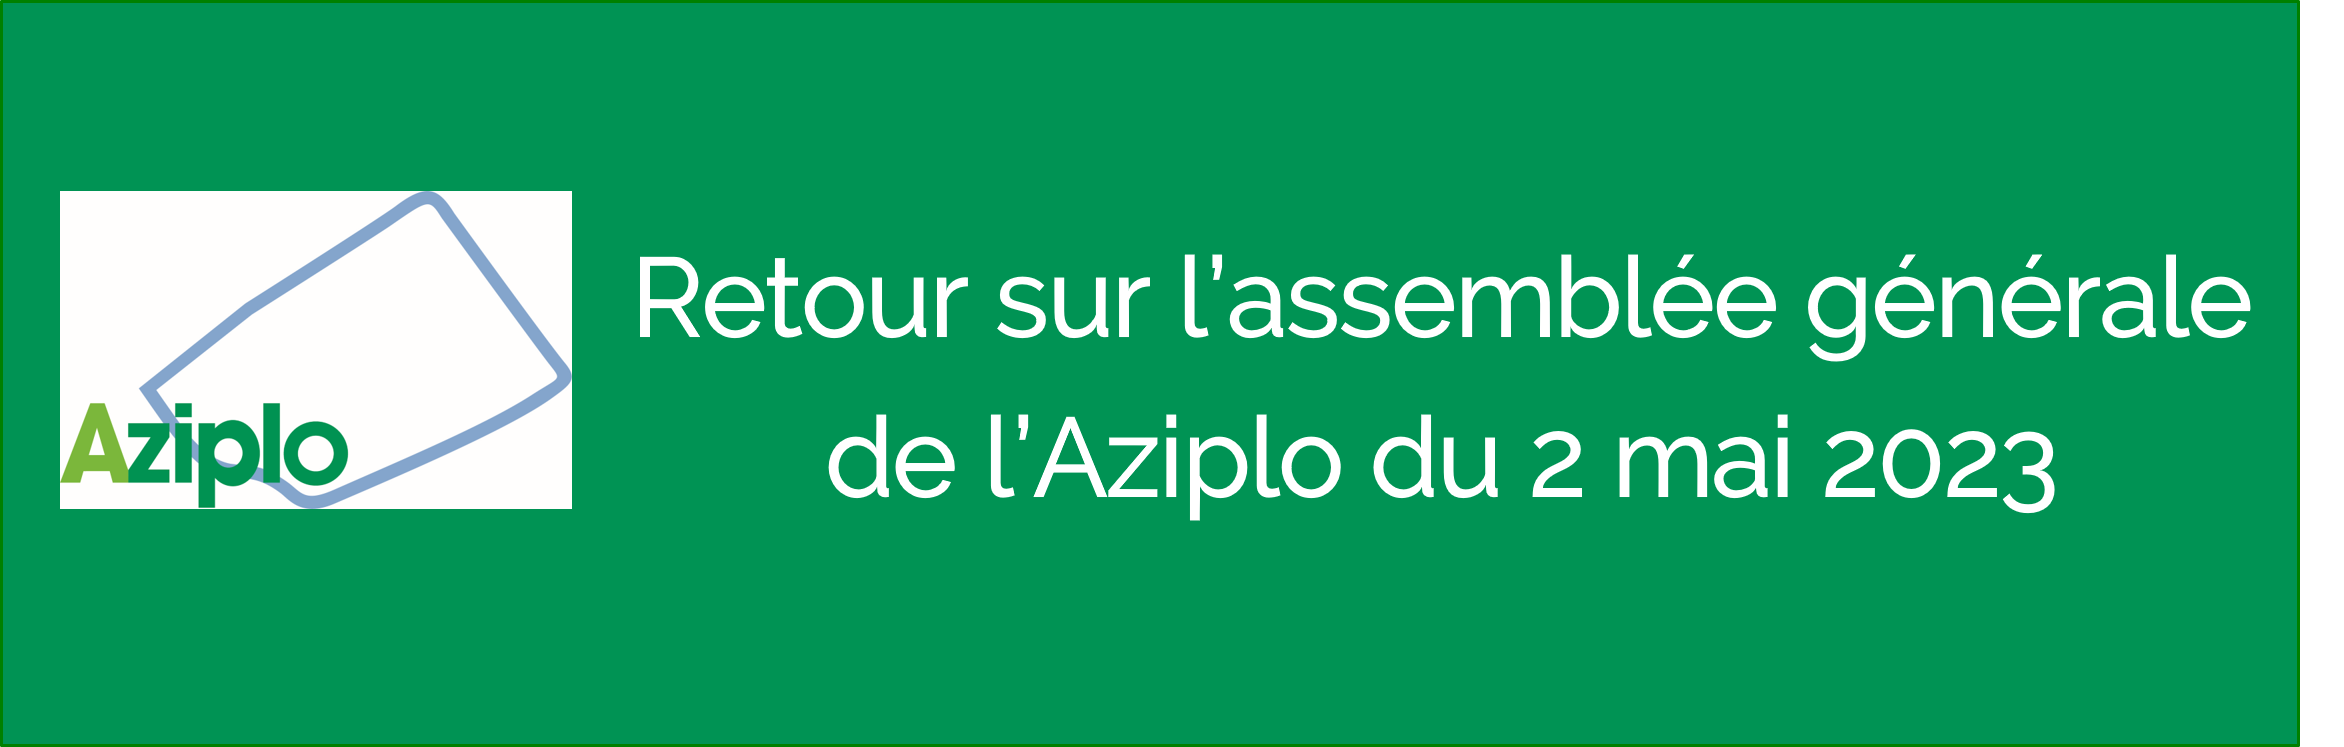 RETOUR SUR L'ASSEMBLEE GENERALE DE L'AZIPLO du 2 mai 2023